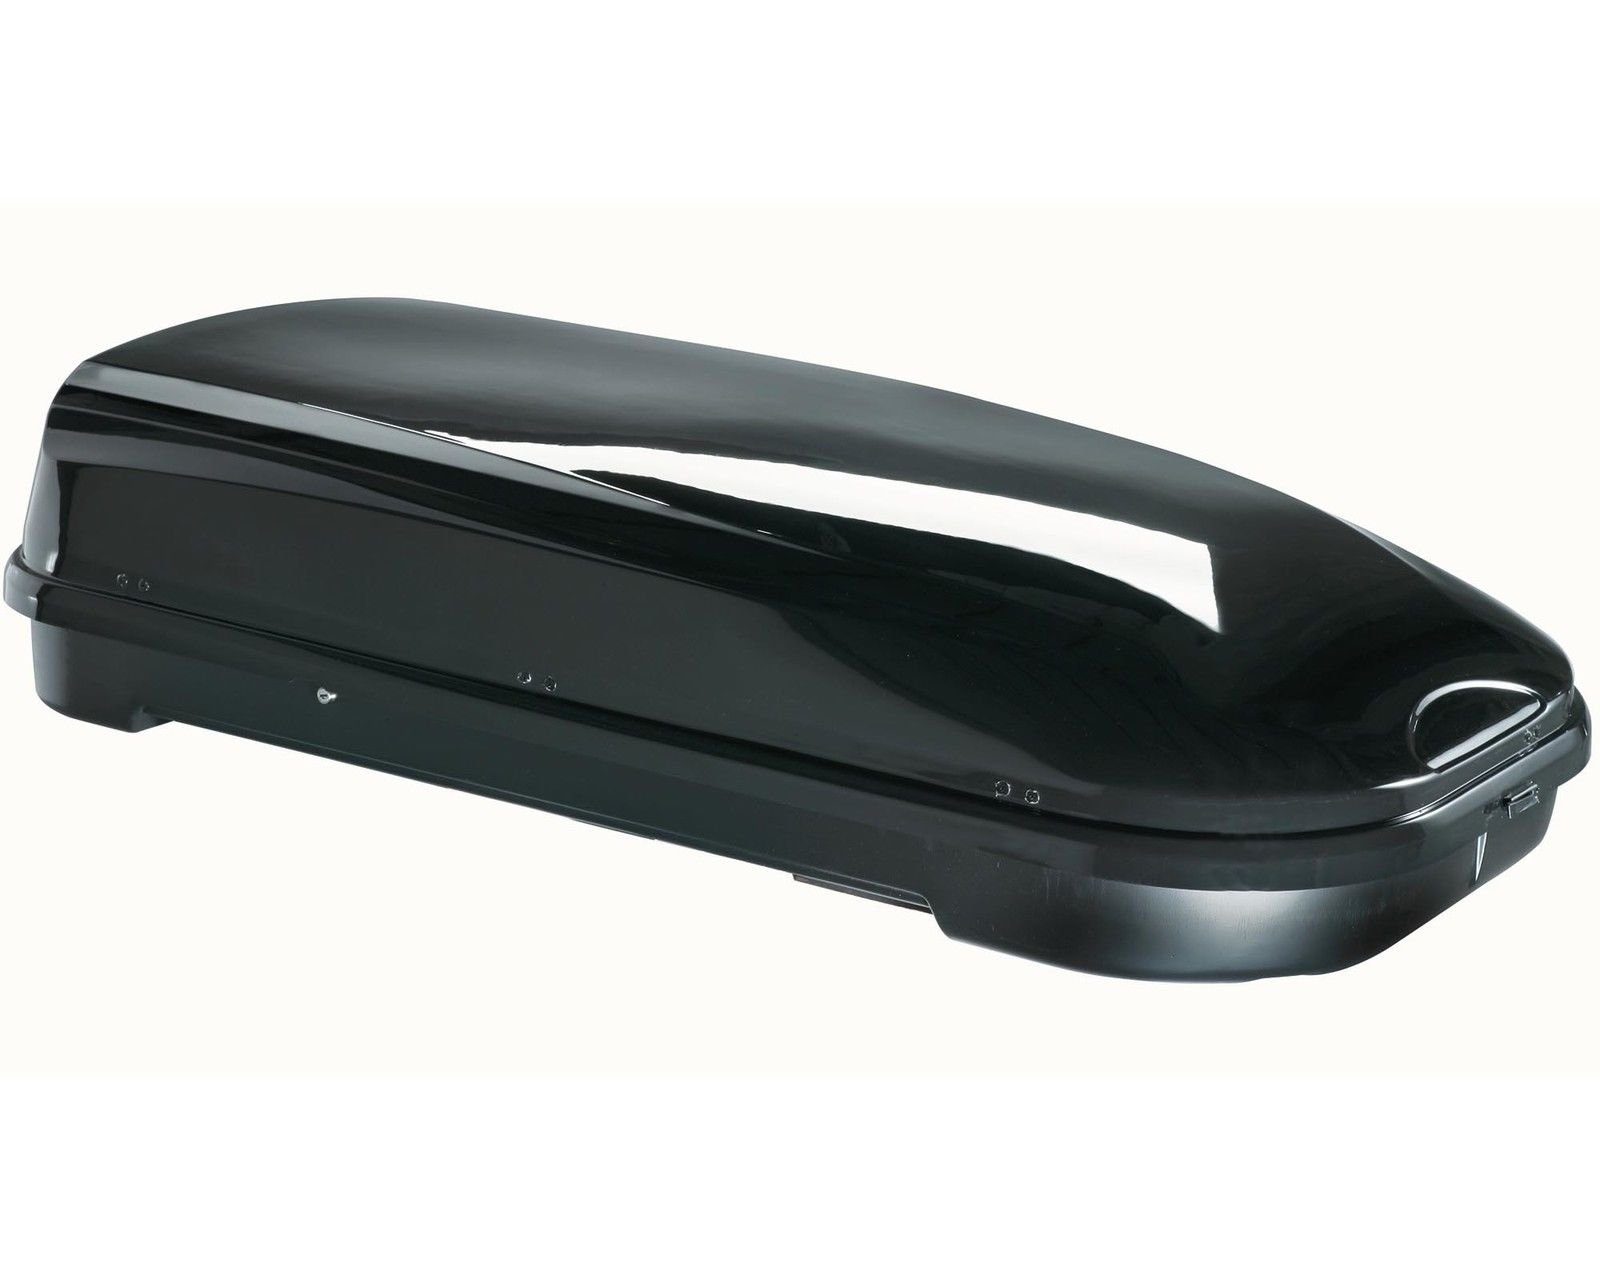 VDP Dachbox, (ALLES IN EINEM - Sparen Sie sich die Auswahl mehrerer Komponenten für Ihre perfekte Transportlösung - Mit dem Set aus Dachbox und Dachträger erhalten Sie ein leicht zu montierendes Komplettpaket mit allen Befestigungsteilen. Die glänzend-schwarze Box überzeugt mit ihrem edlen Design und viel Platz), Dachbox VDP-FL580 Relingträger Alu kompatibel mit Ford Galaxy WGR 96-10 abschließbar